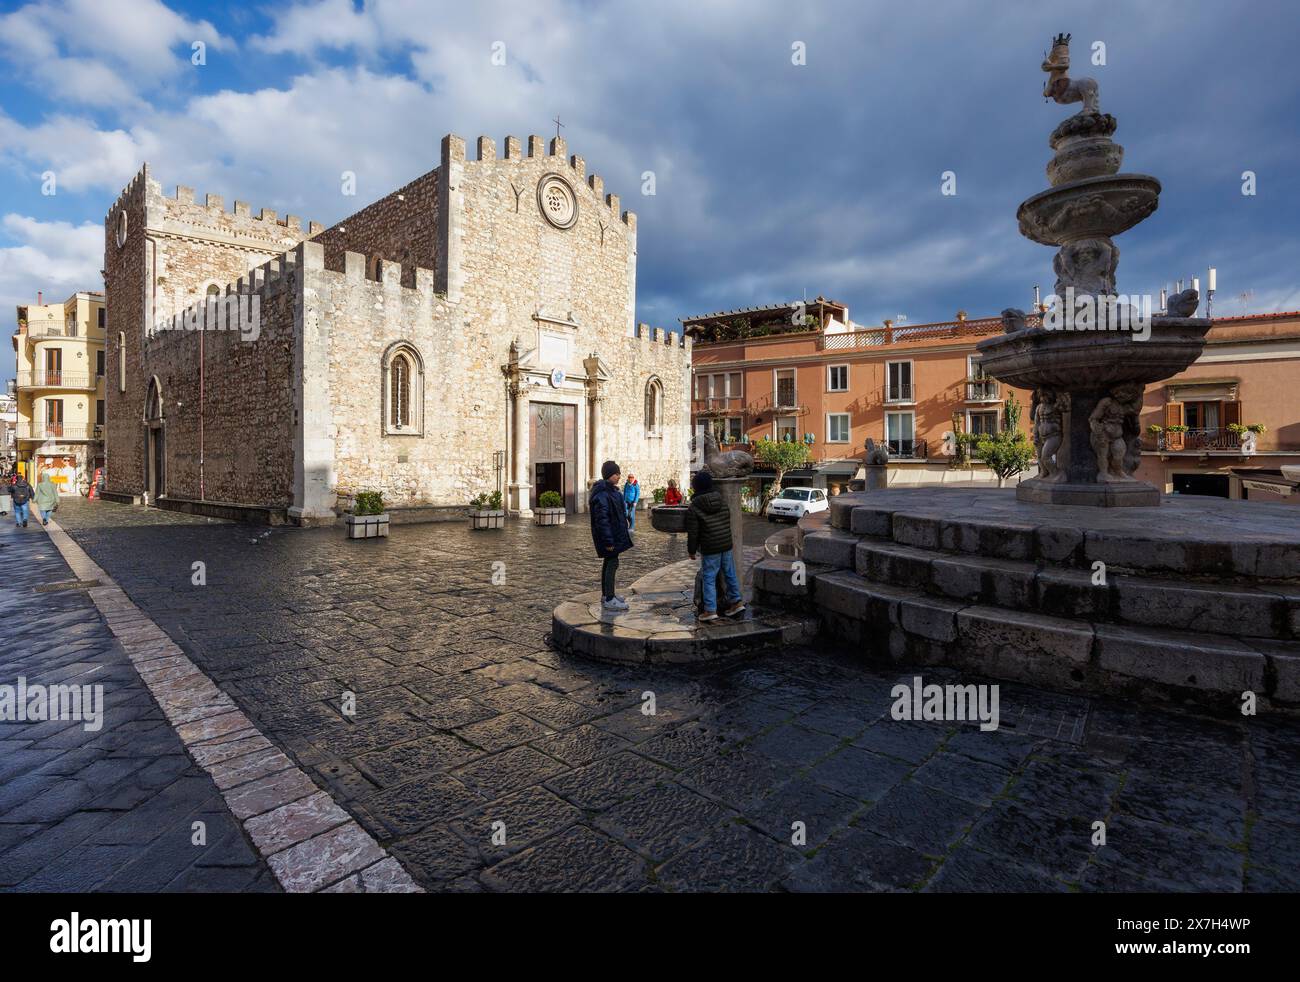 Taormina, Sicilia, Italia. Piazza del Duomo con la Cattedrale di San Nicolo del XIII secolo e la fontana barocca. Foto Stock